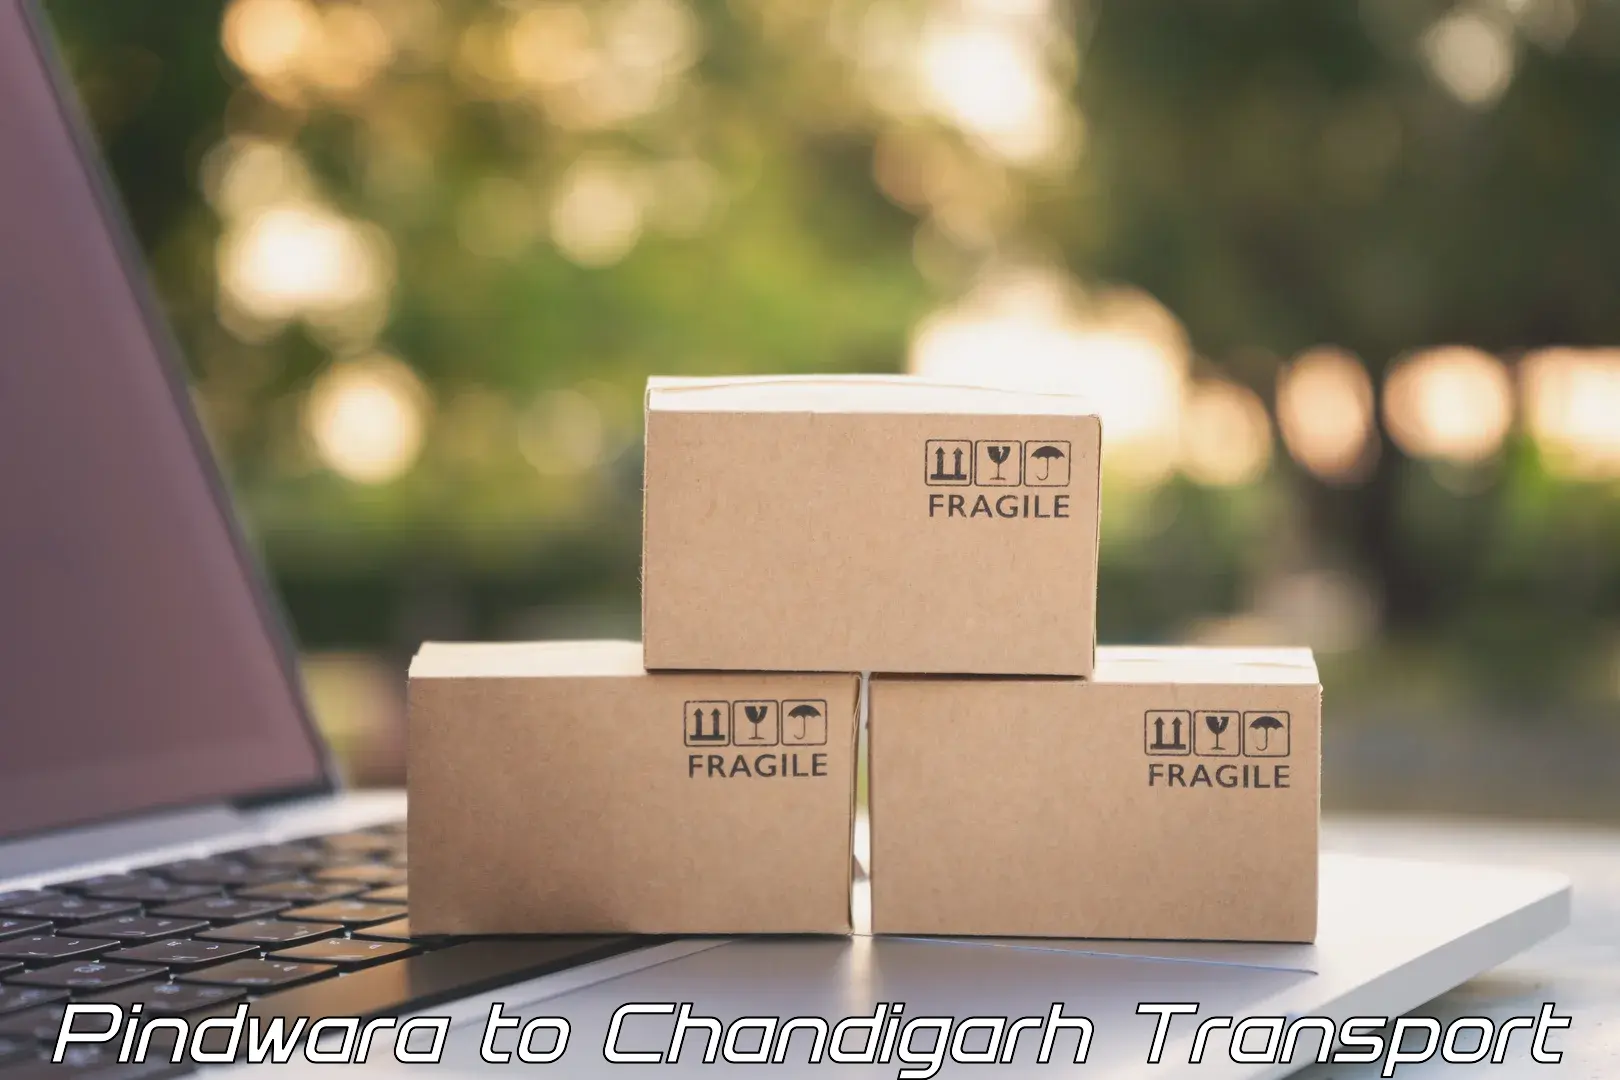 Furniture transport service Pindwara to Chandigarh